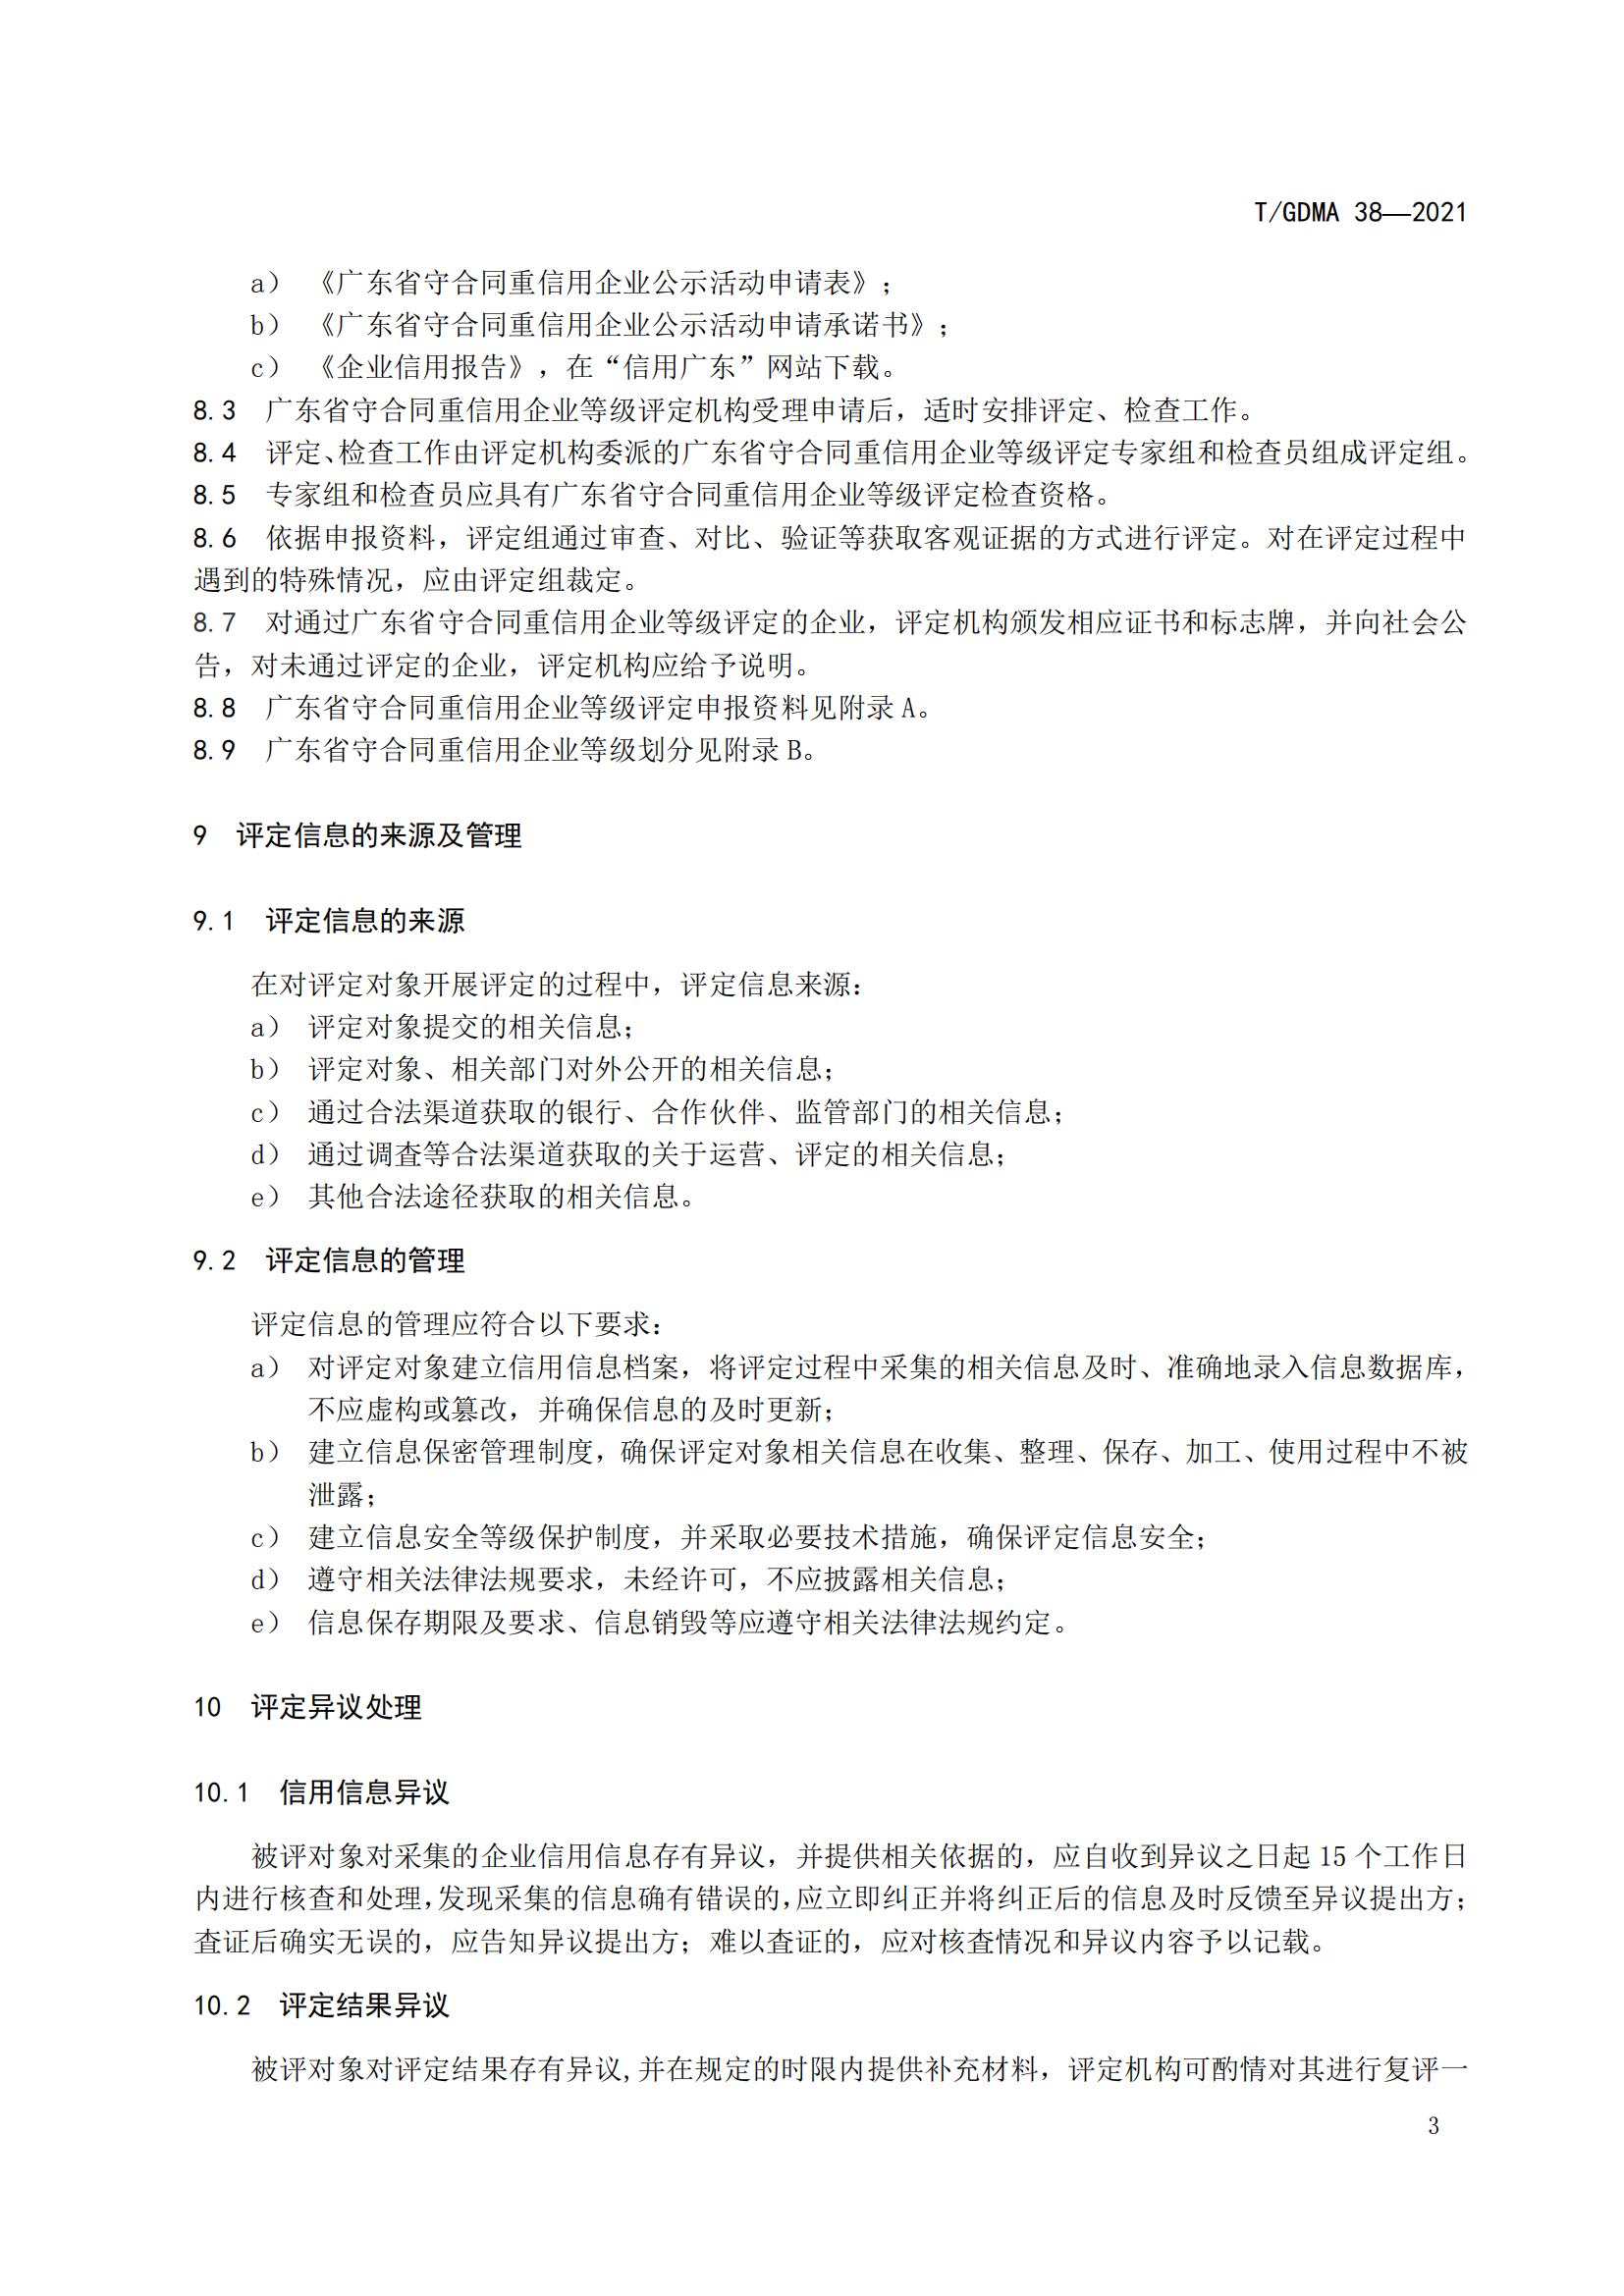 TGDMA 38 广东省守合同重信用企业等级评定规范-发布稿_06.jpg